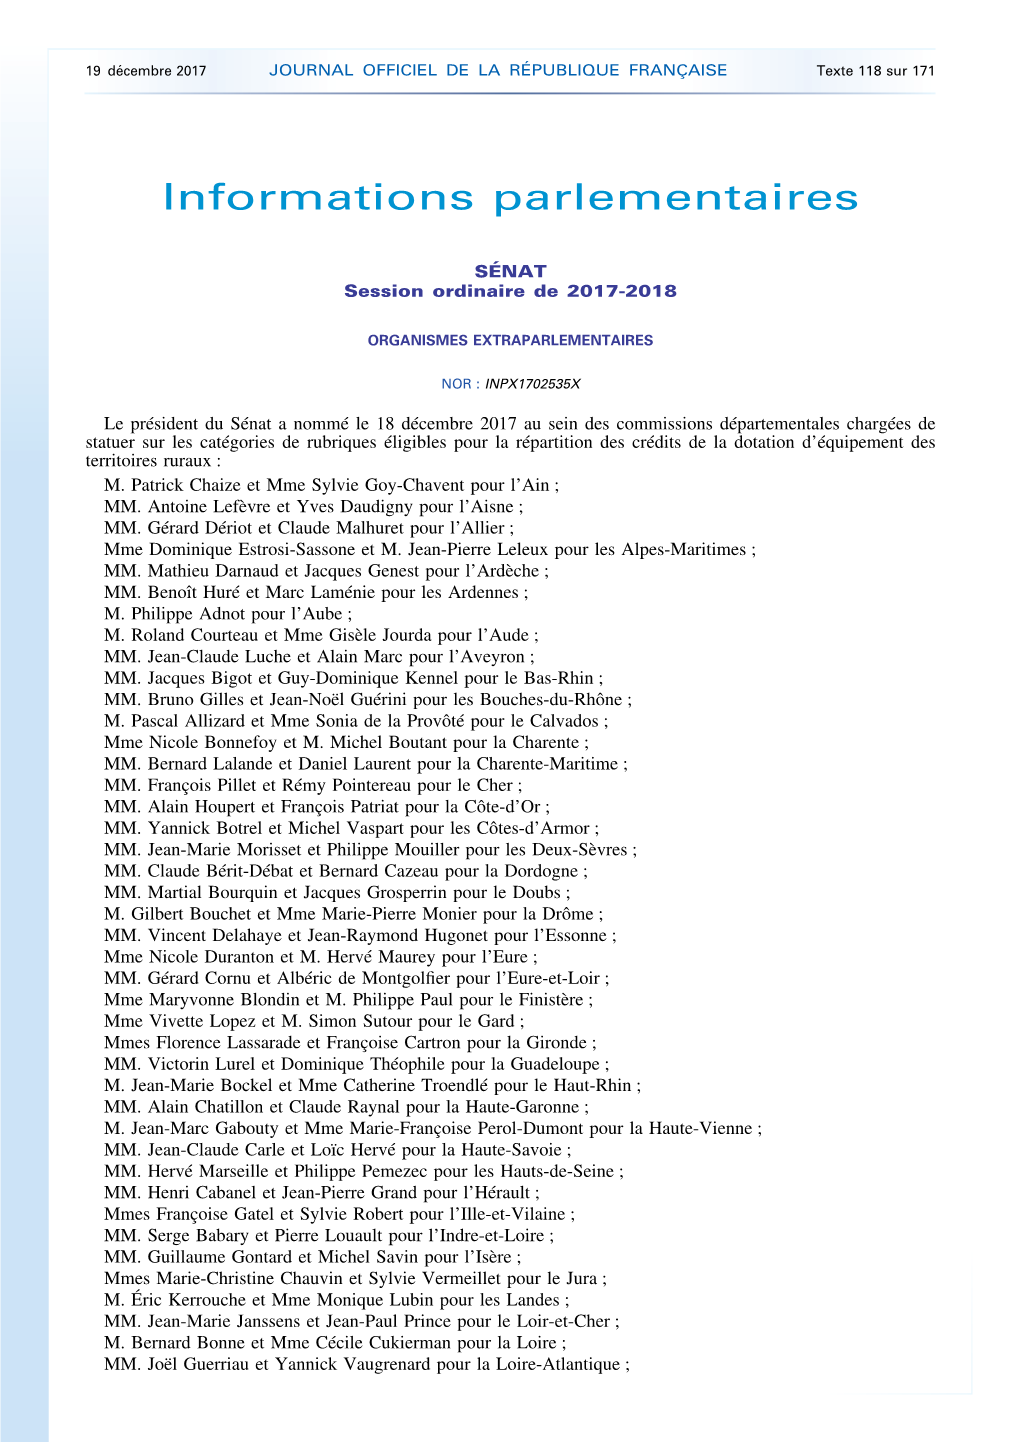 JOURNAL OFFICIEL DE LA RÉPUBLIQUE FRANÇAISE Texte 118 Sur 171